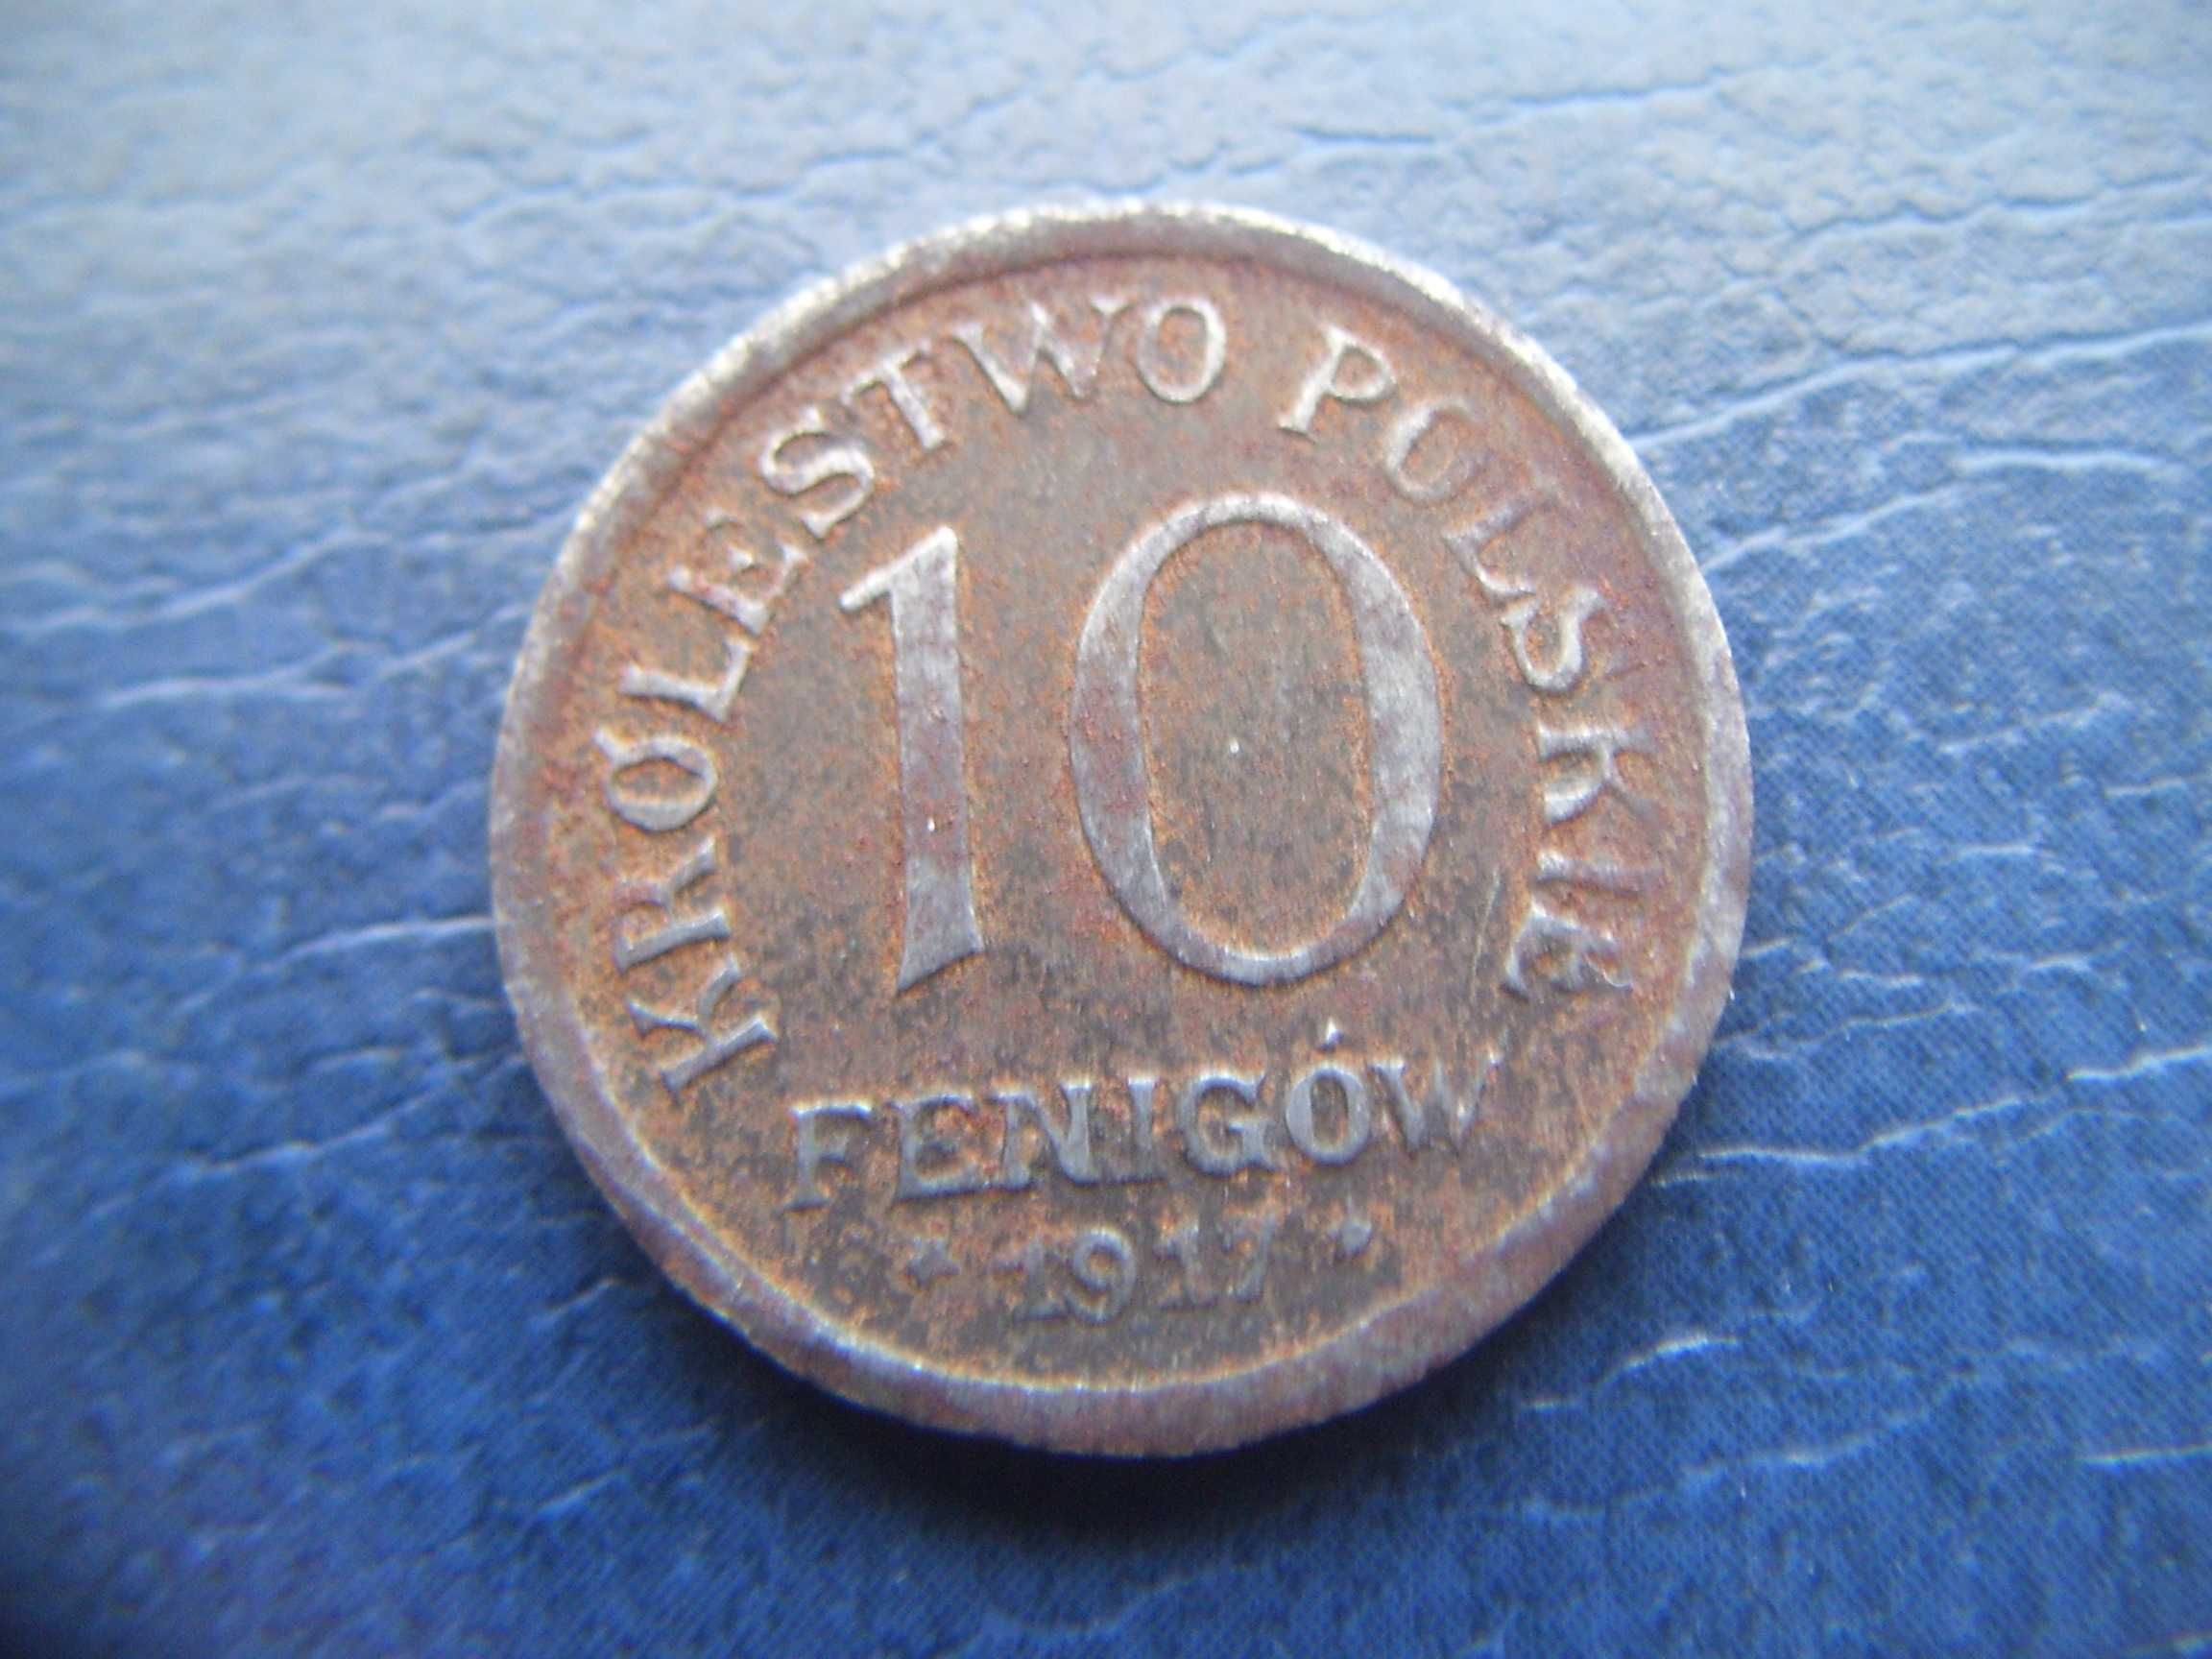 Stare monety 10 fenig 1917